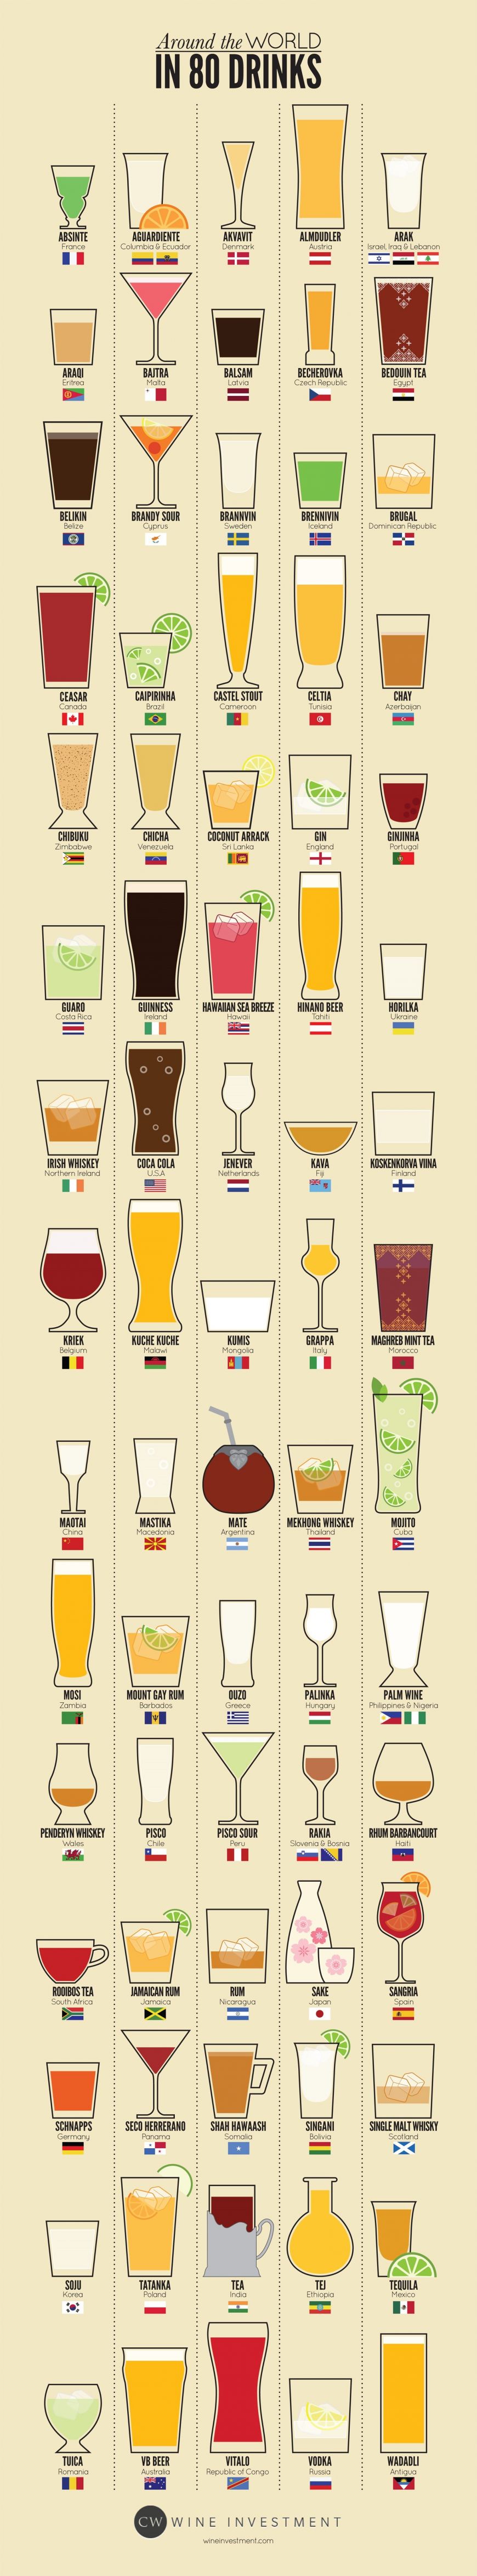 Wine Investment: Băuturi specifice fiecărei țări